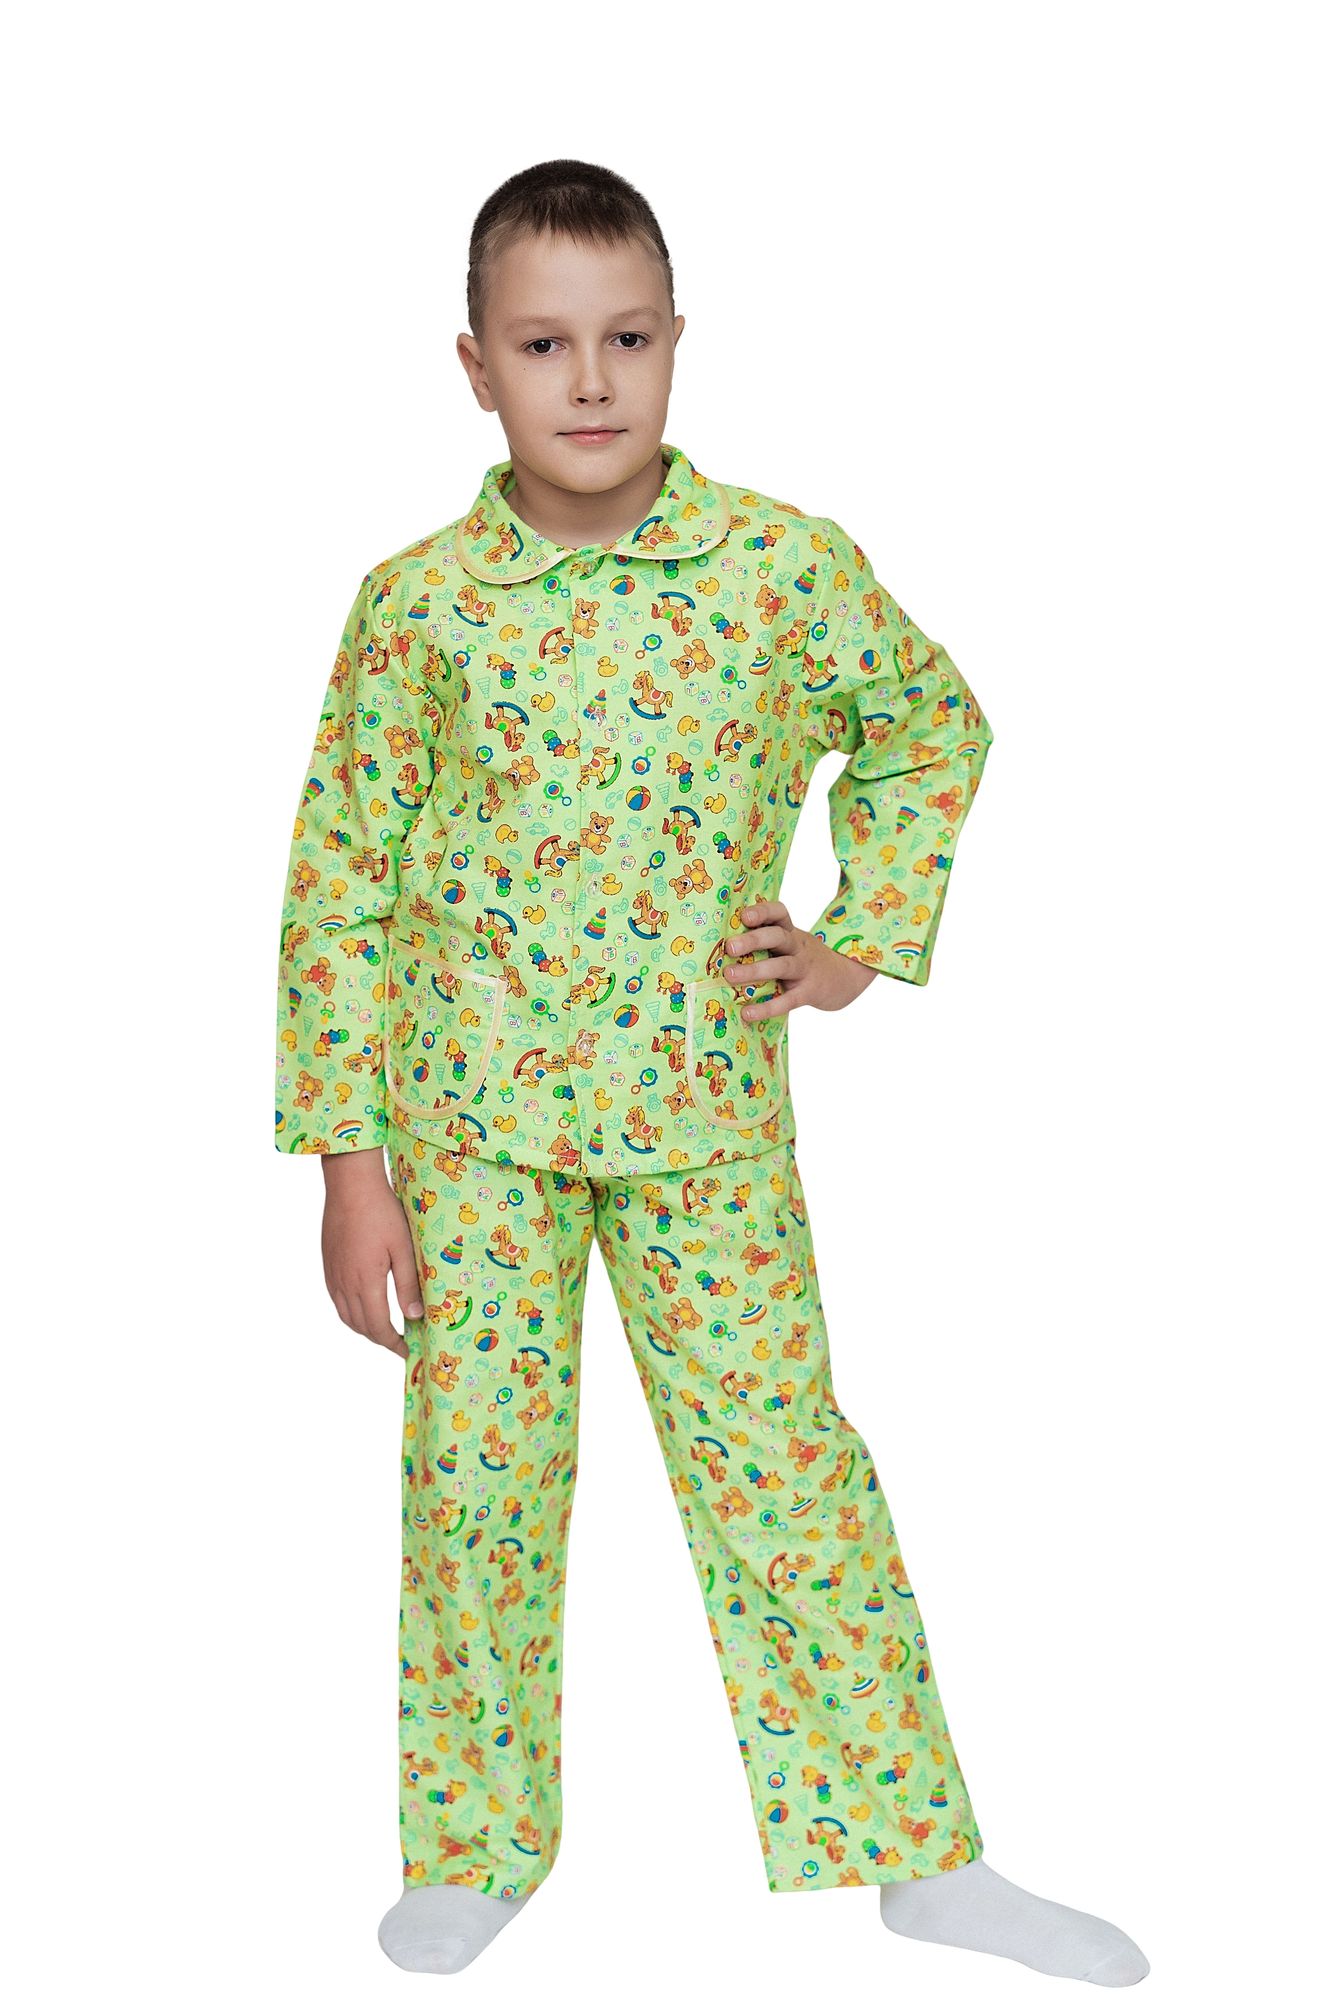 Пижама для мальчика, модель 307, фланель 24 размер, Игрушки 5398-3